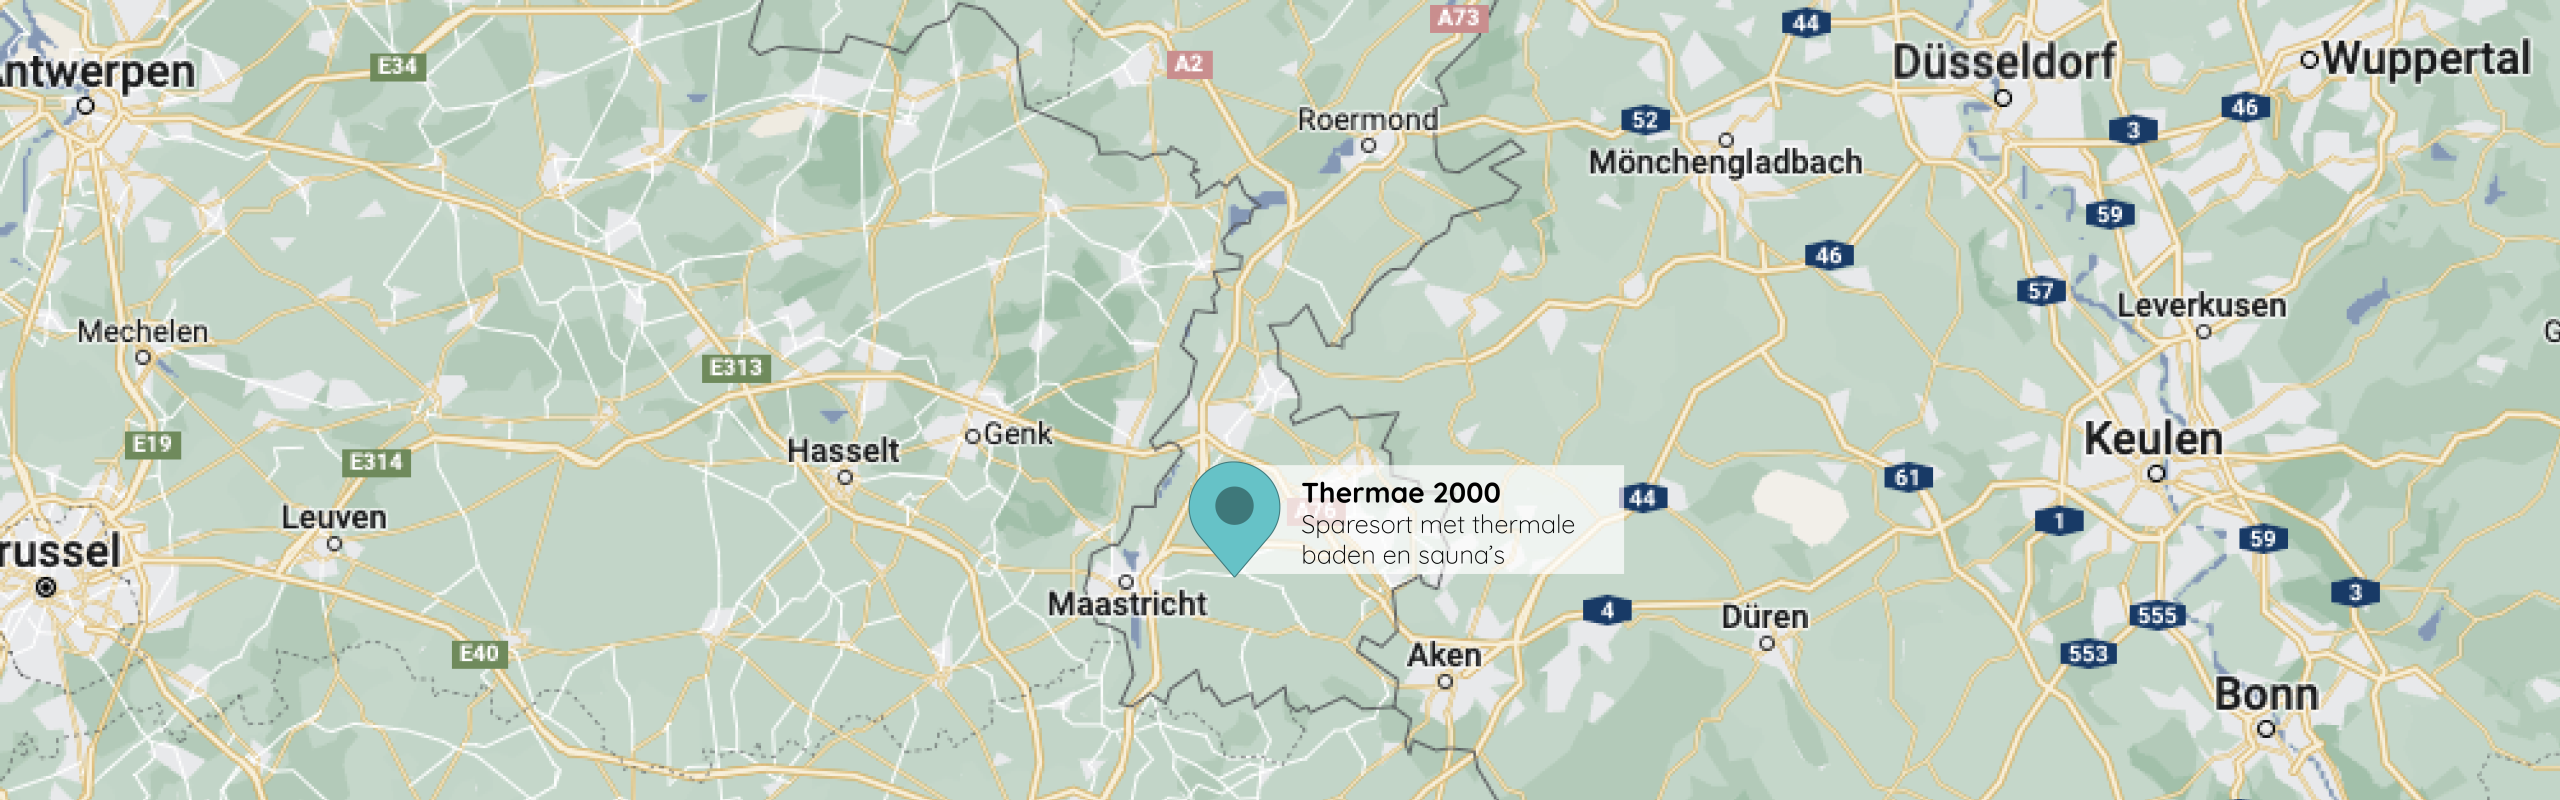 Thermae 2000 op de kaart voor de Nederlandse website.